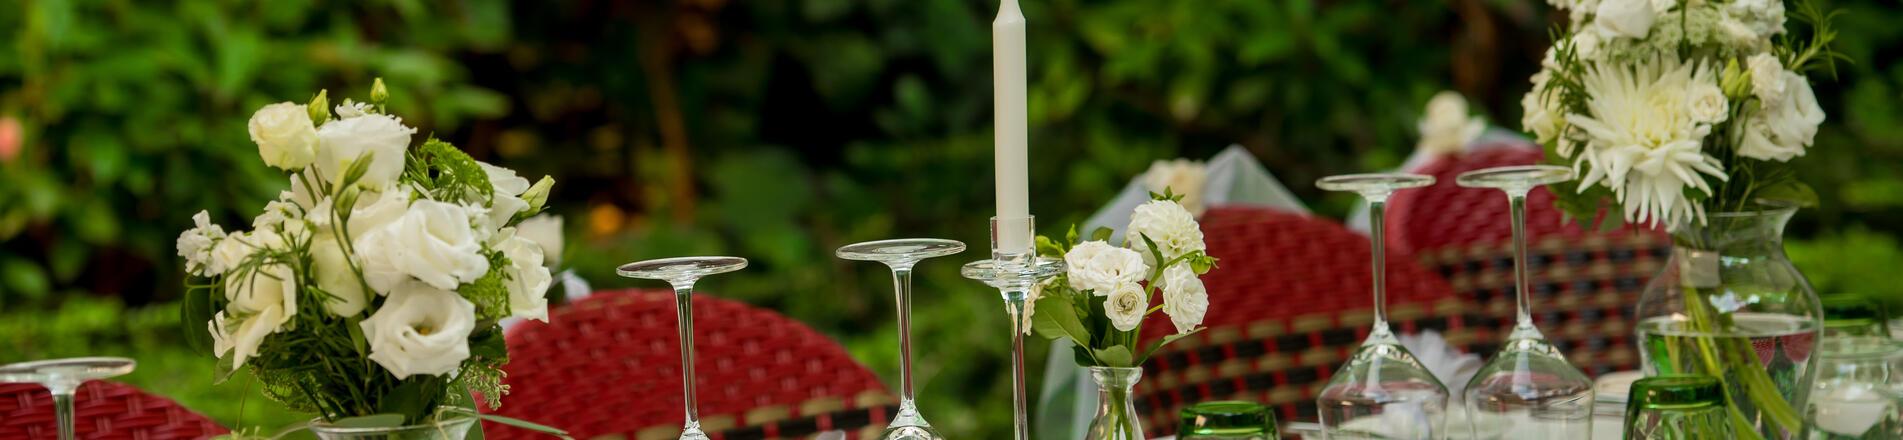 Esküvő szűk családi körben: íme a legjobb éttermek és rendezvénytermek kis esküvőkhöz!